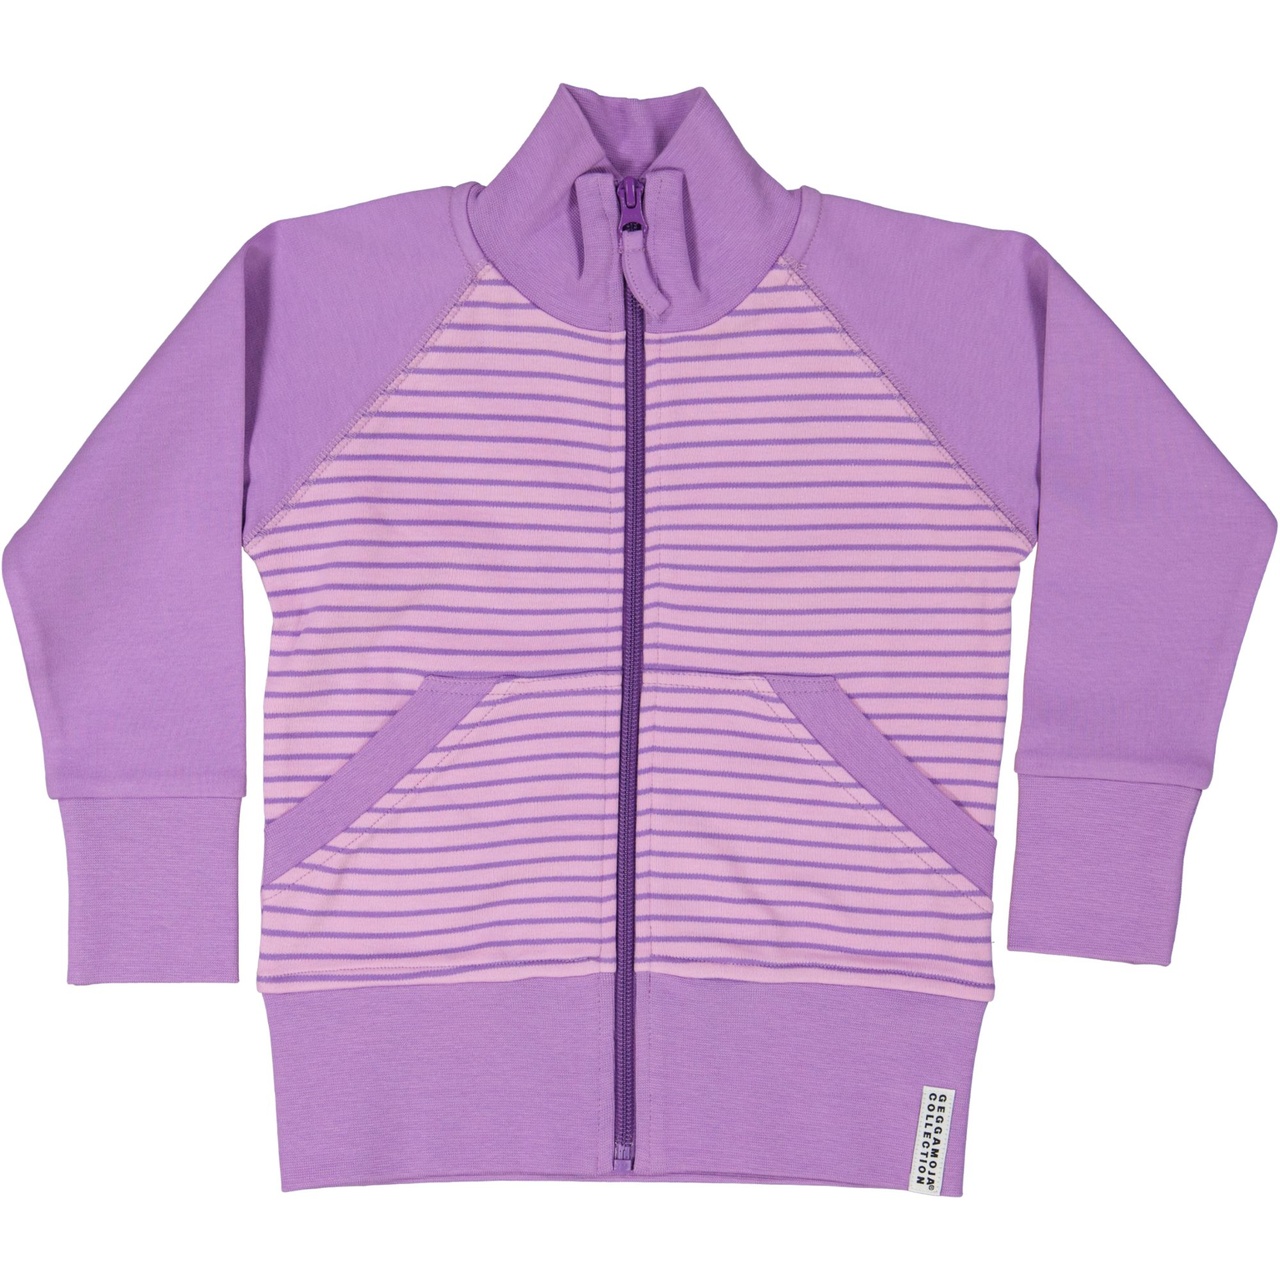 Zip sweater L.purple/purple  146/152